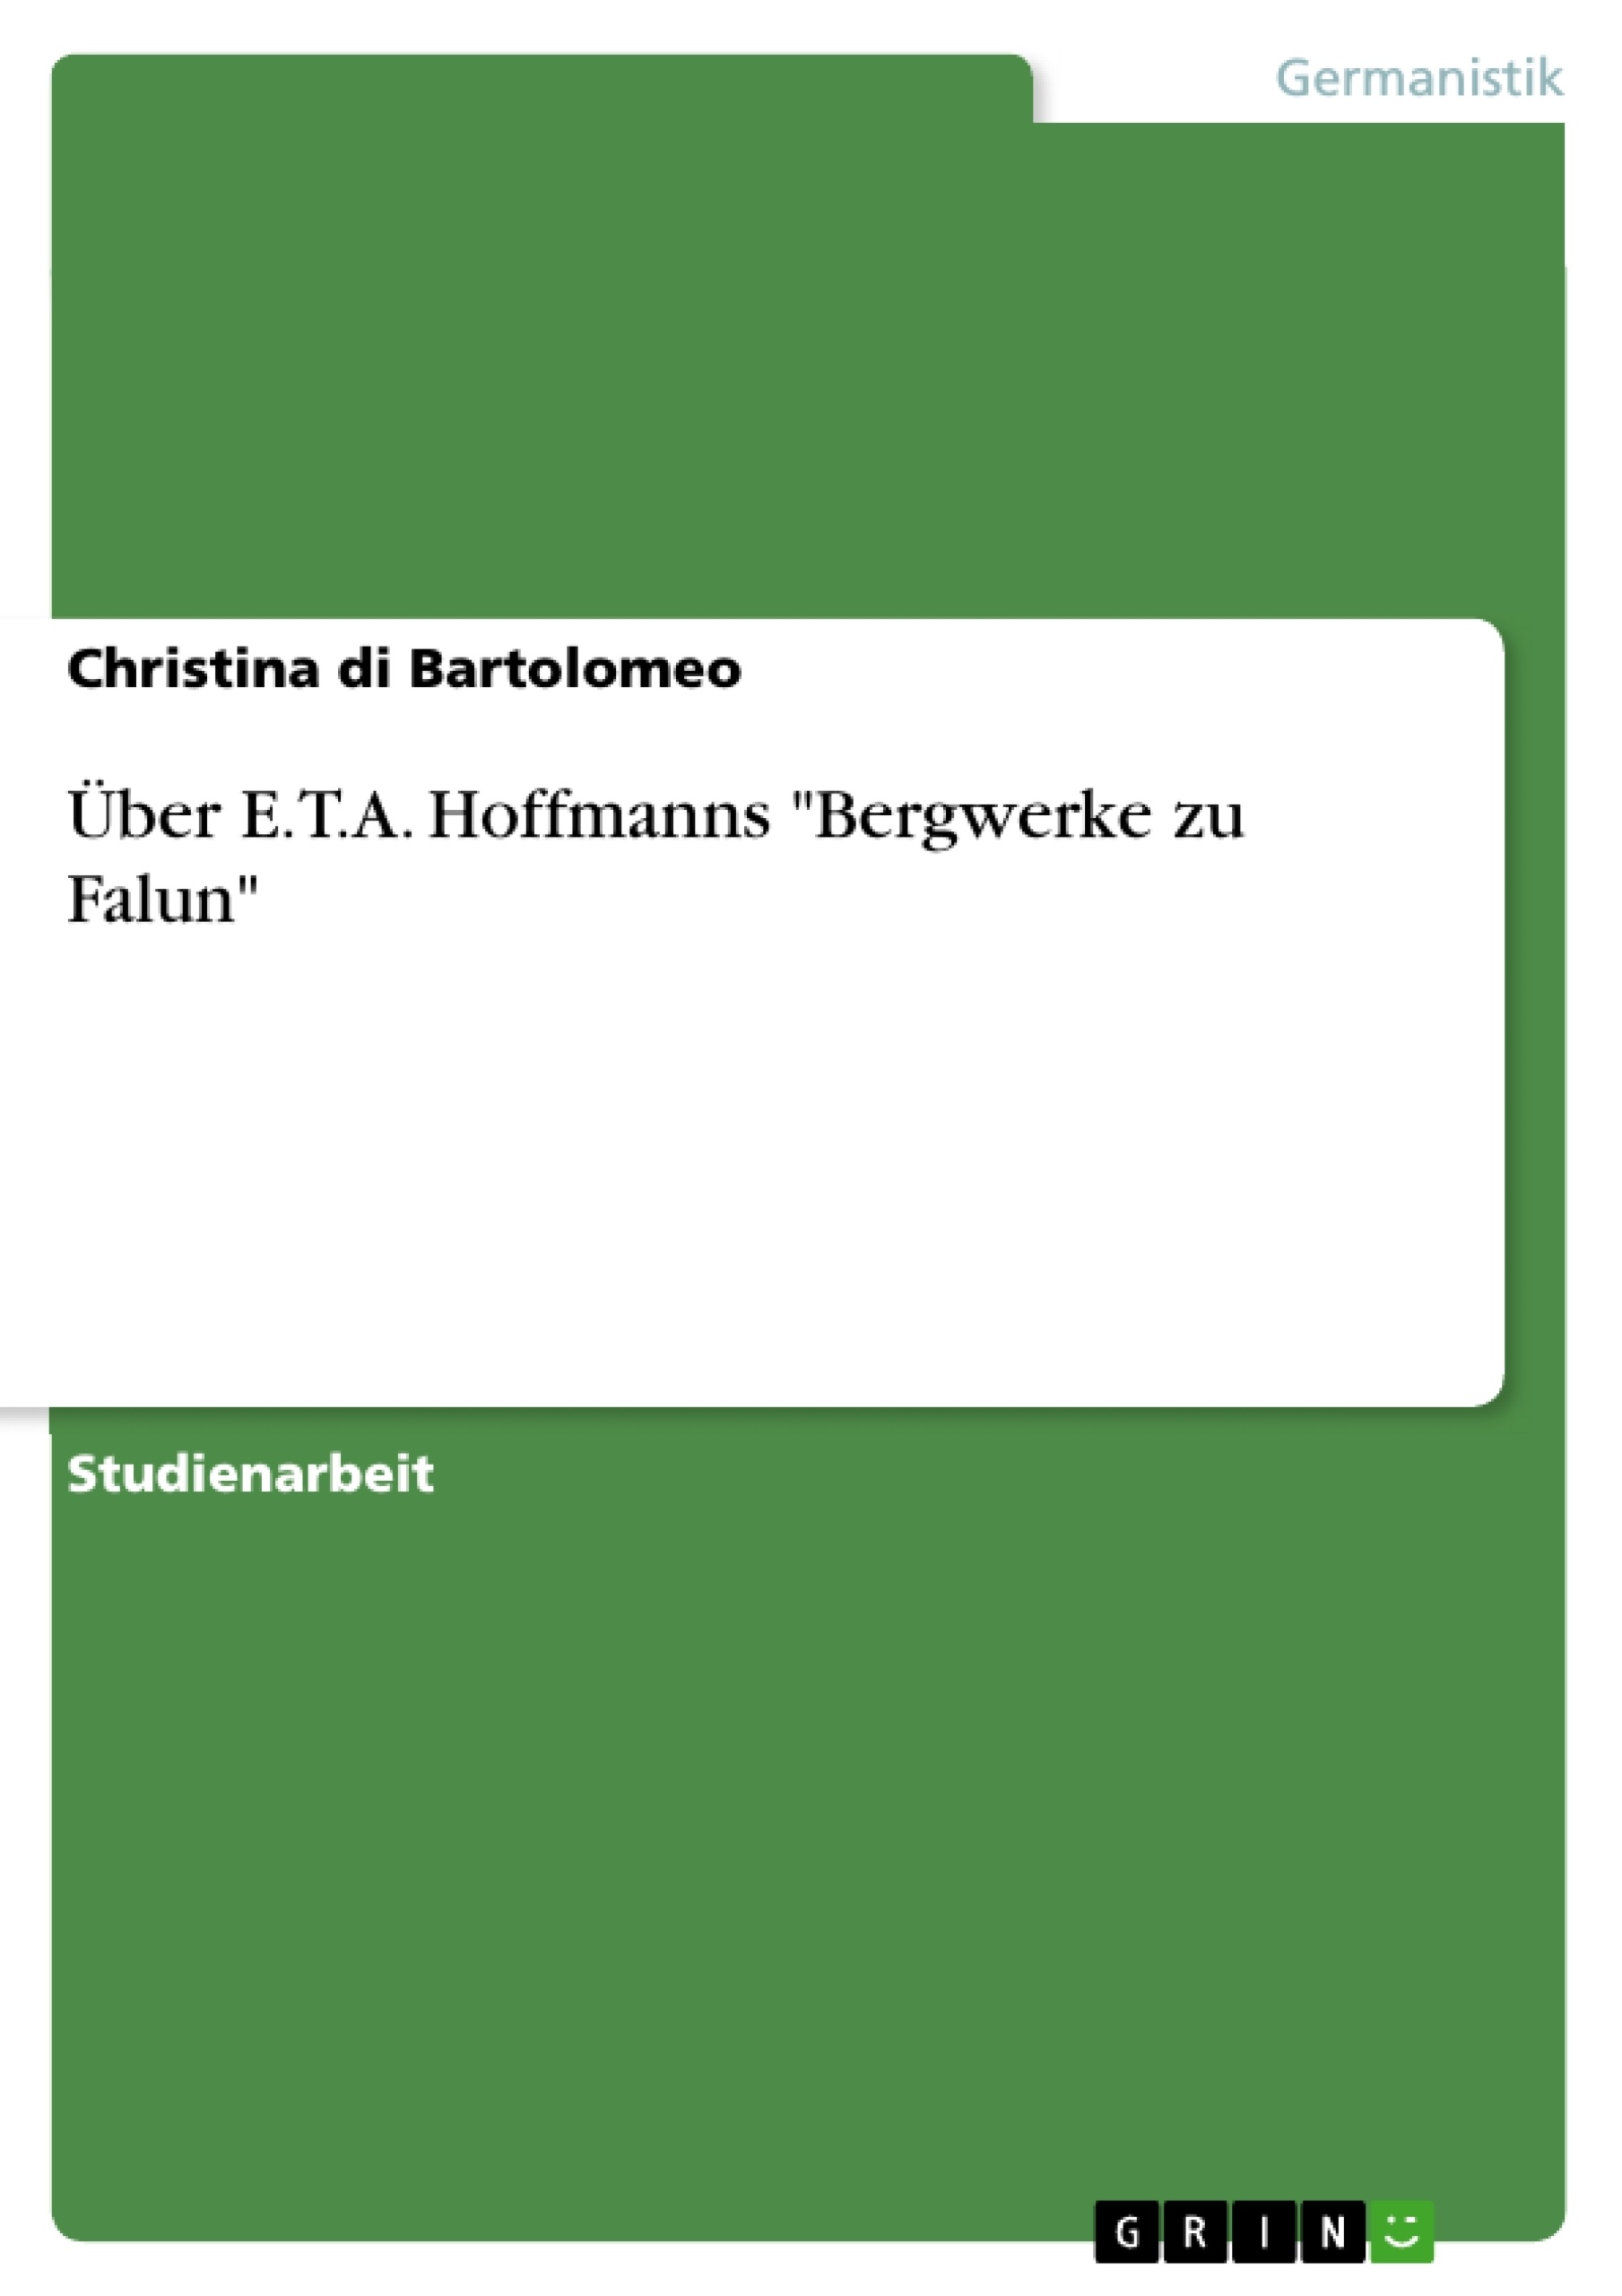 Titel: Über E.T.A. Hoffmanns "Bergwerke zu Falun"